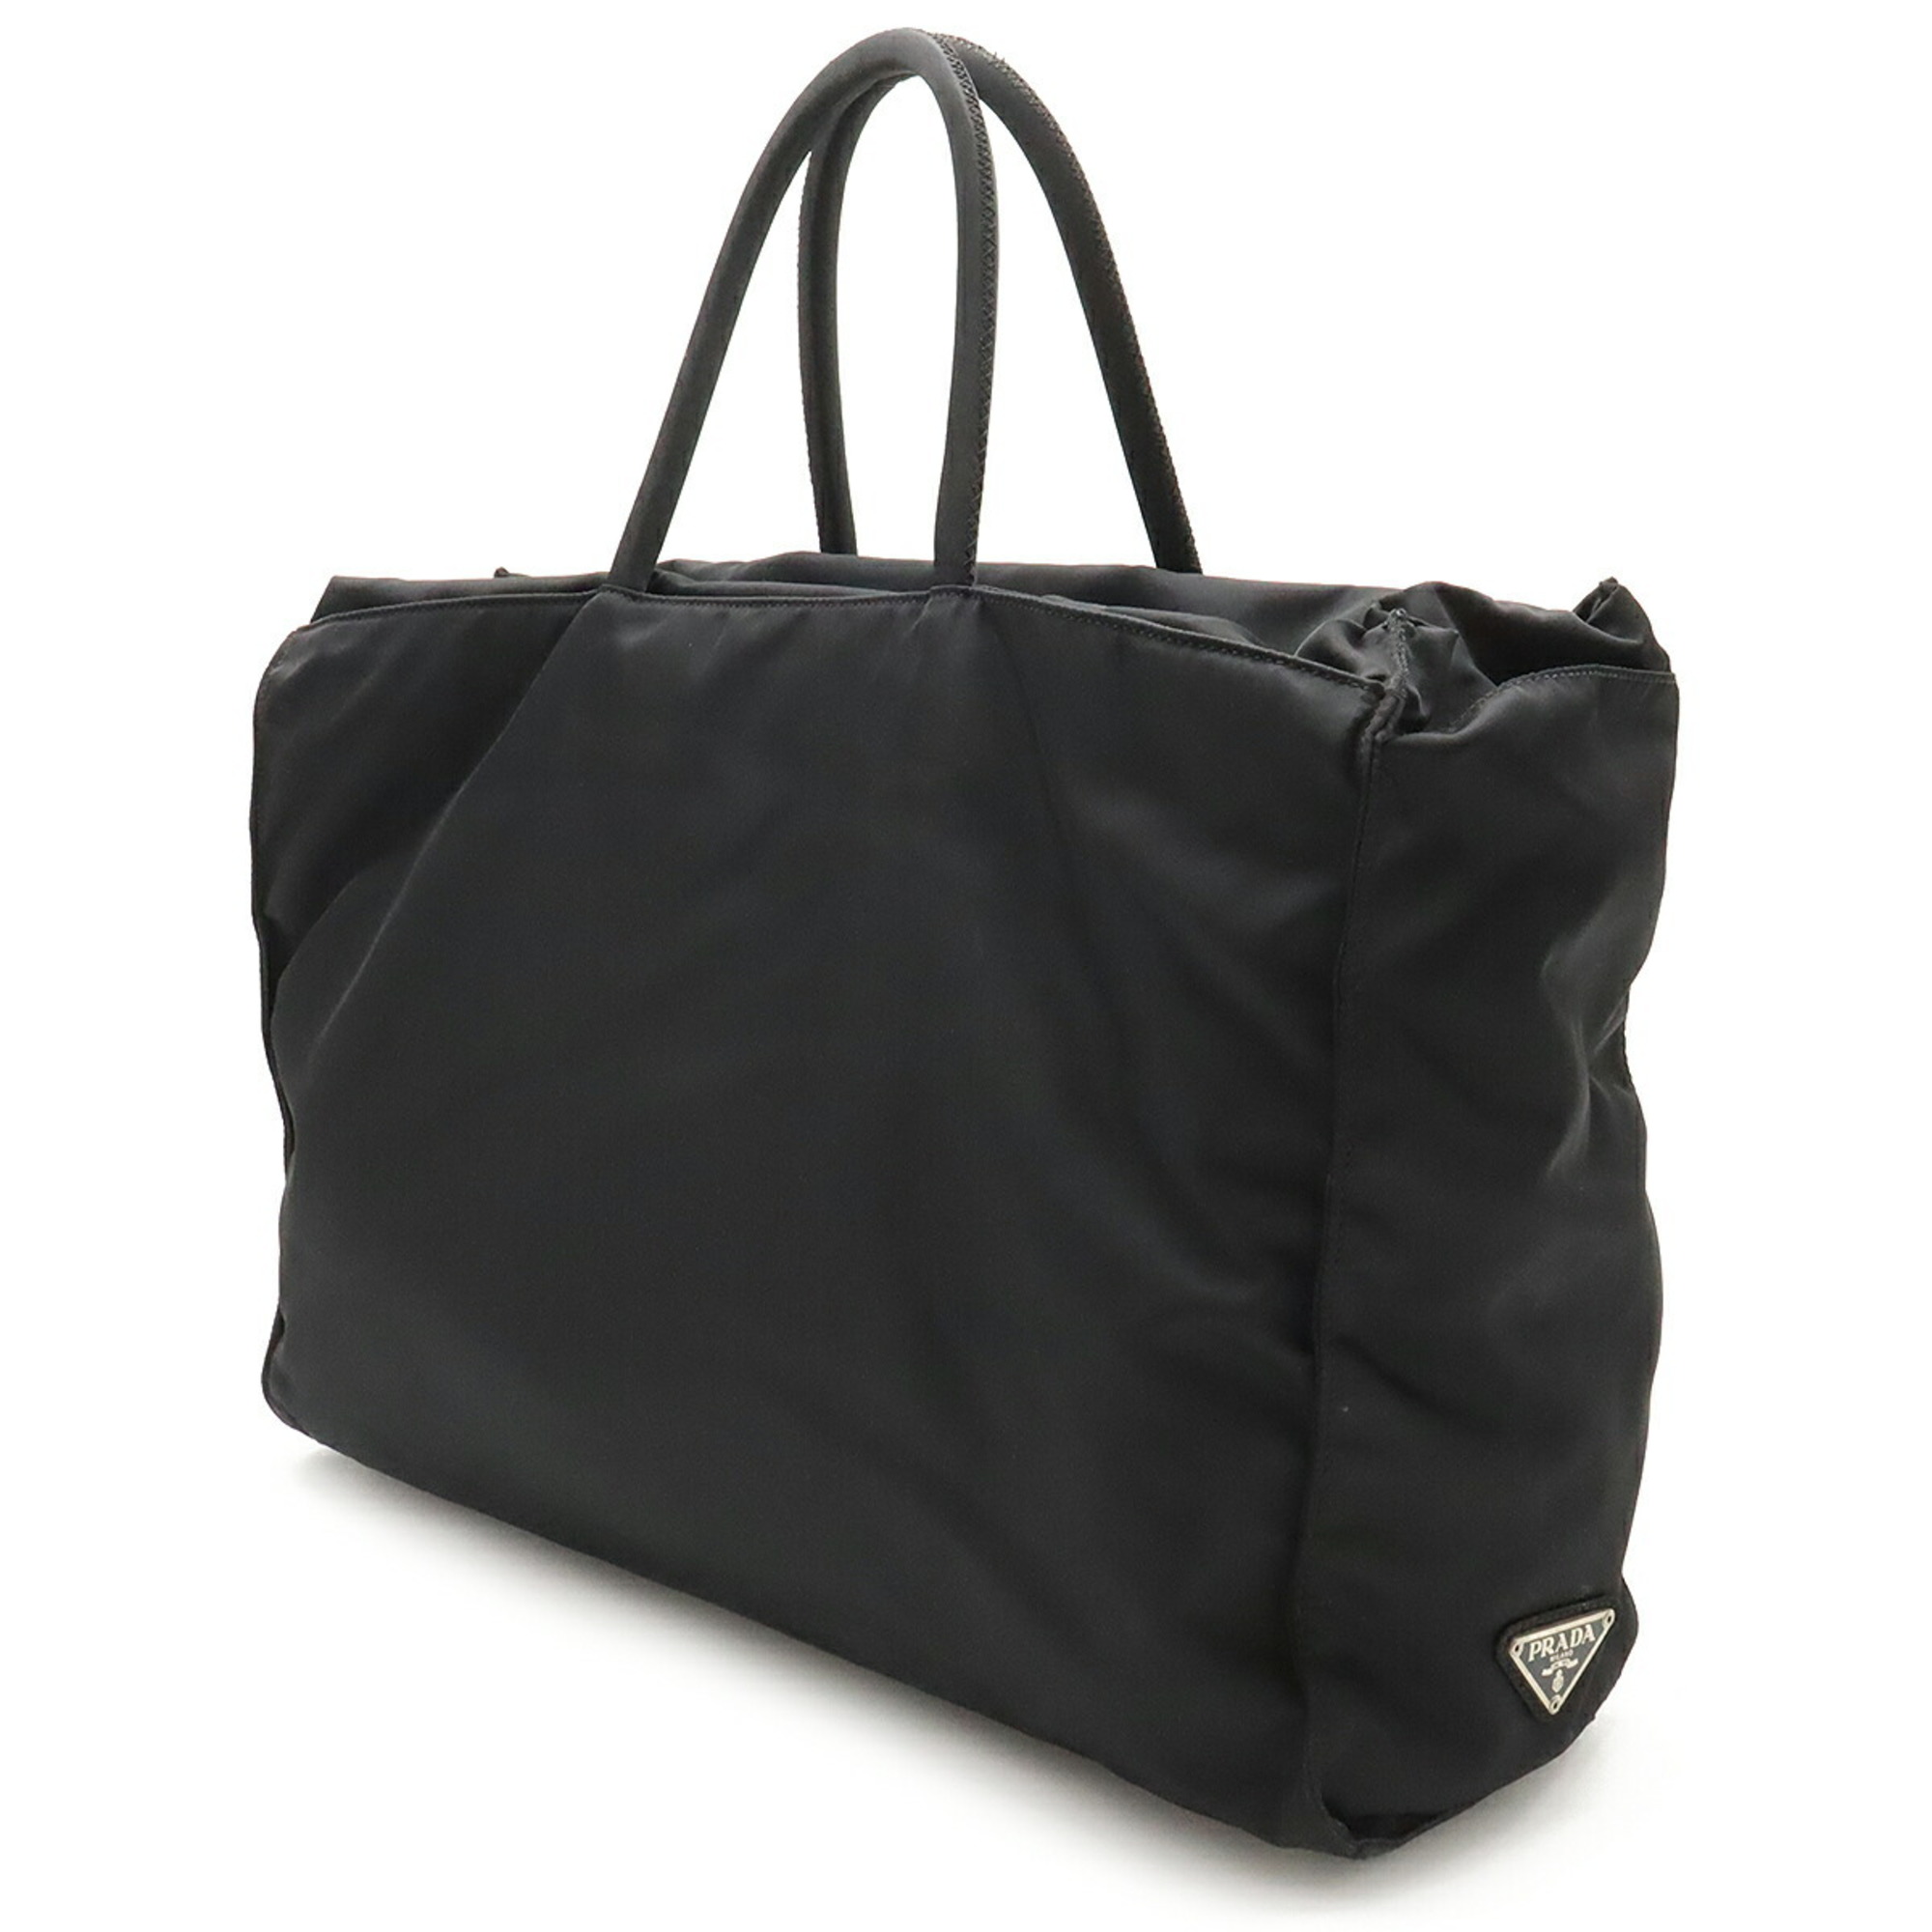 PRADA Prada Tote Bag Handbag Nylon NERO Black